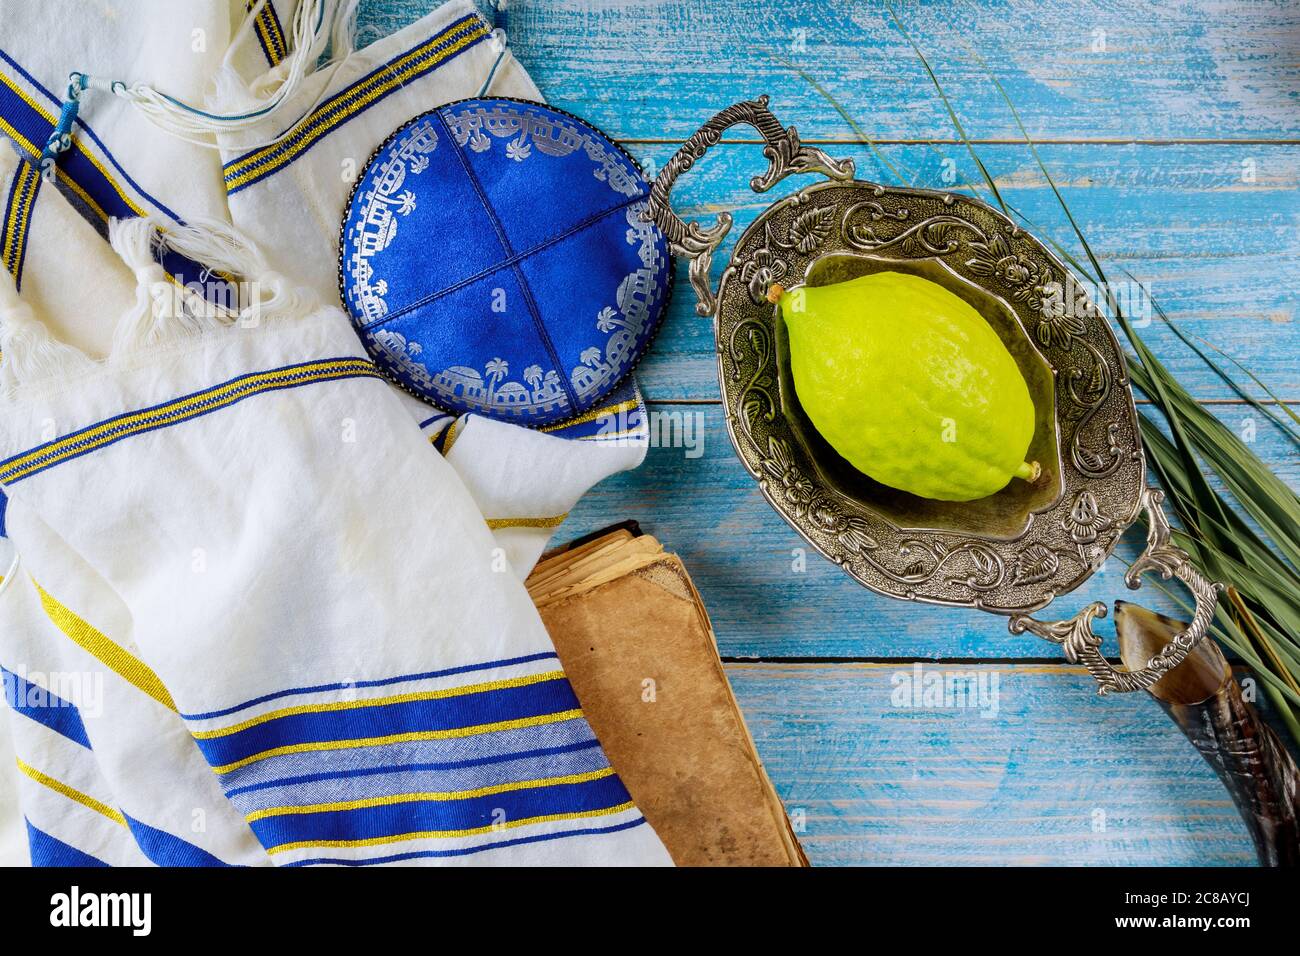 Symboles traditionnels fête juive de Sukkot Etrog, Loulav, hadas, l'arava priant kippa talit livre rituel juif Banque D'Images